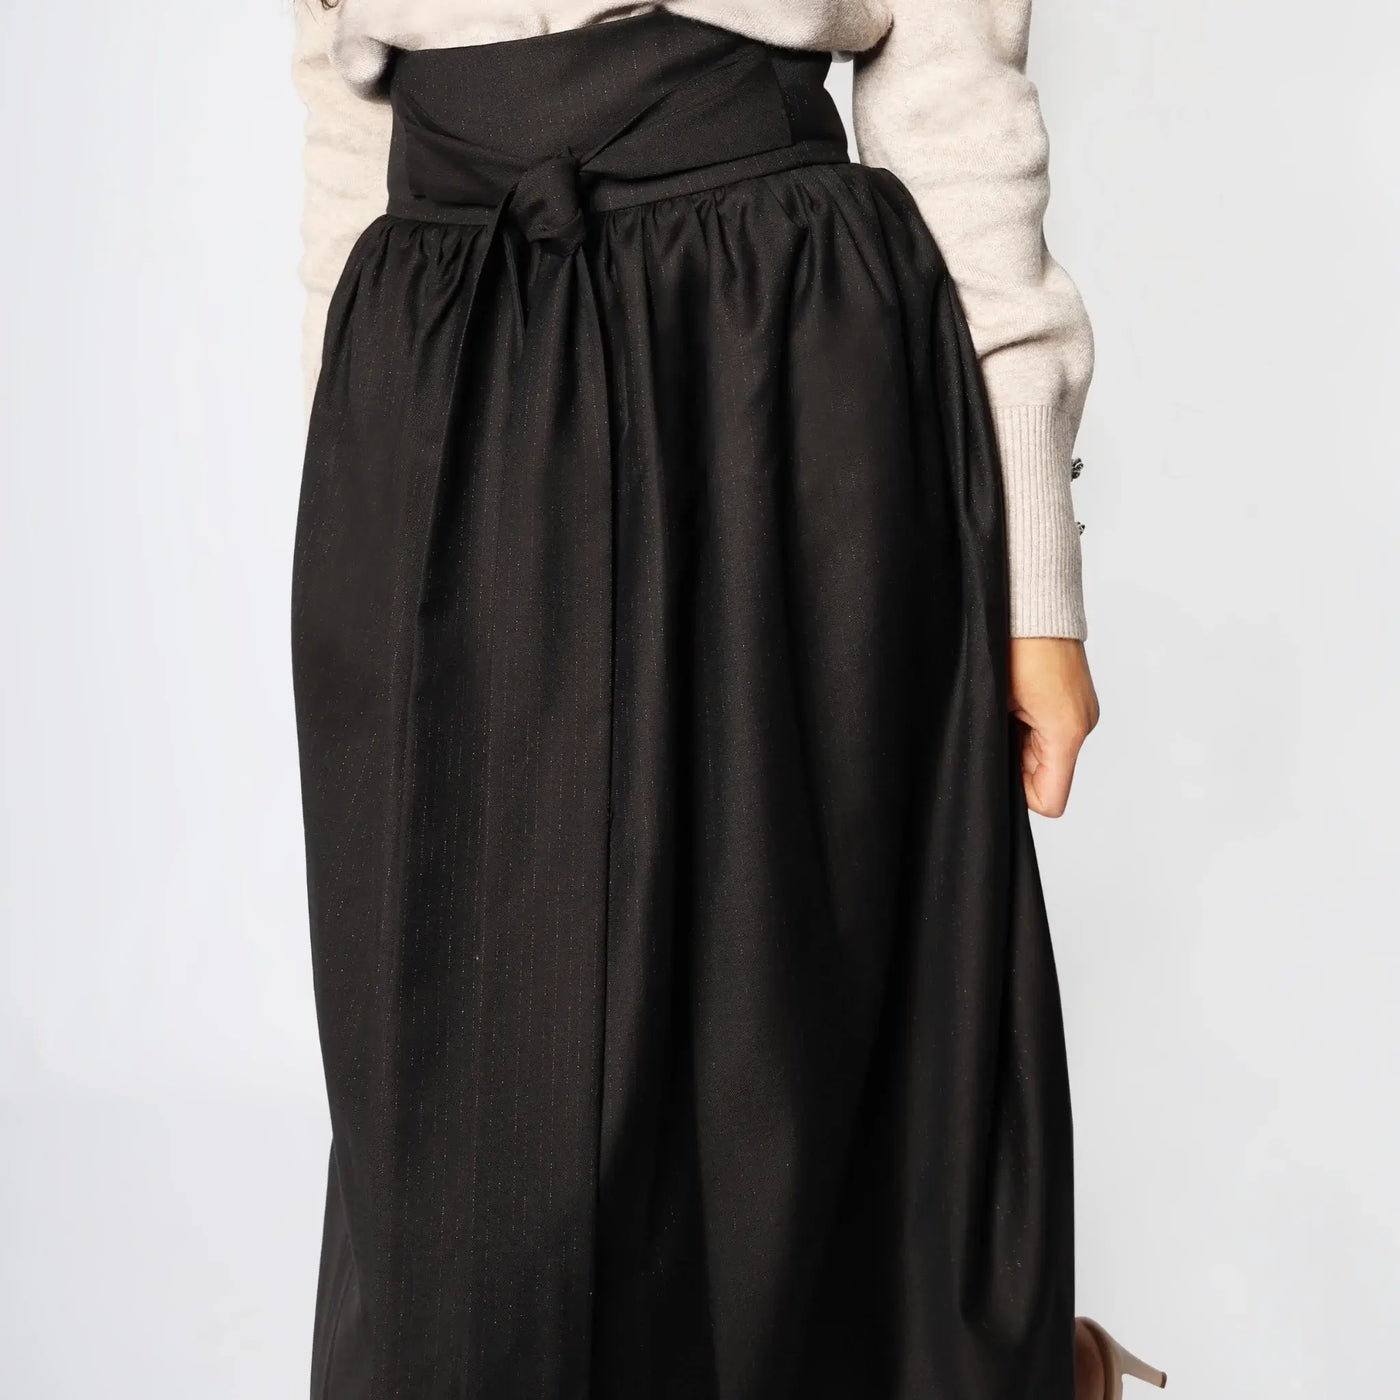 Falda midi de mujer italiana con lazo de cintura alta marrón café